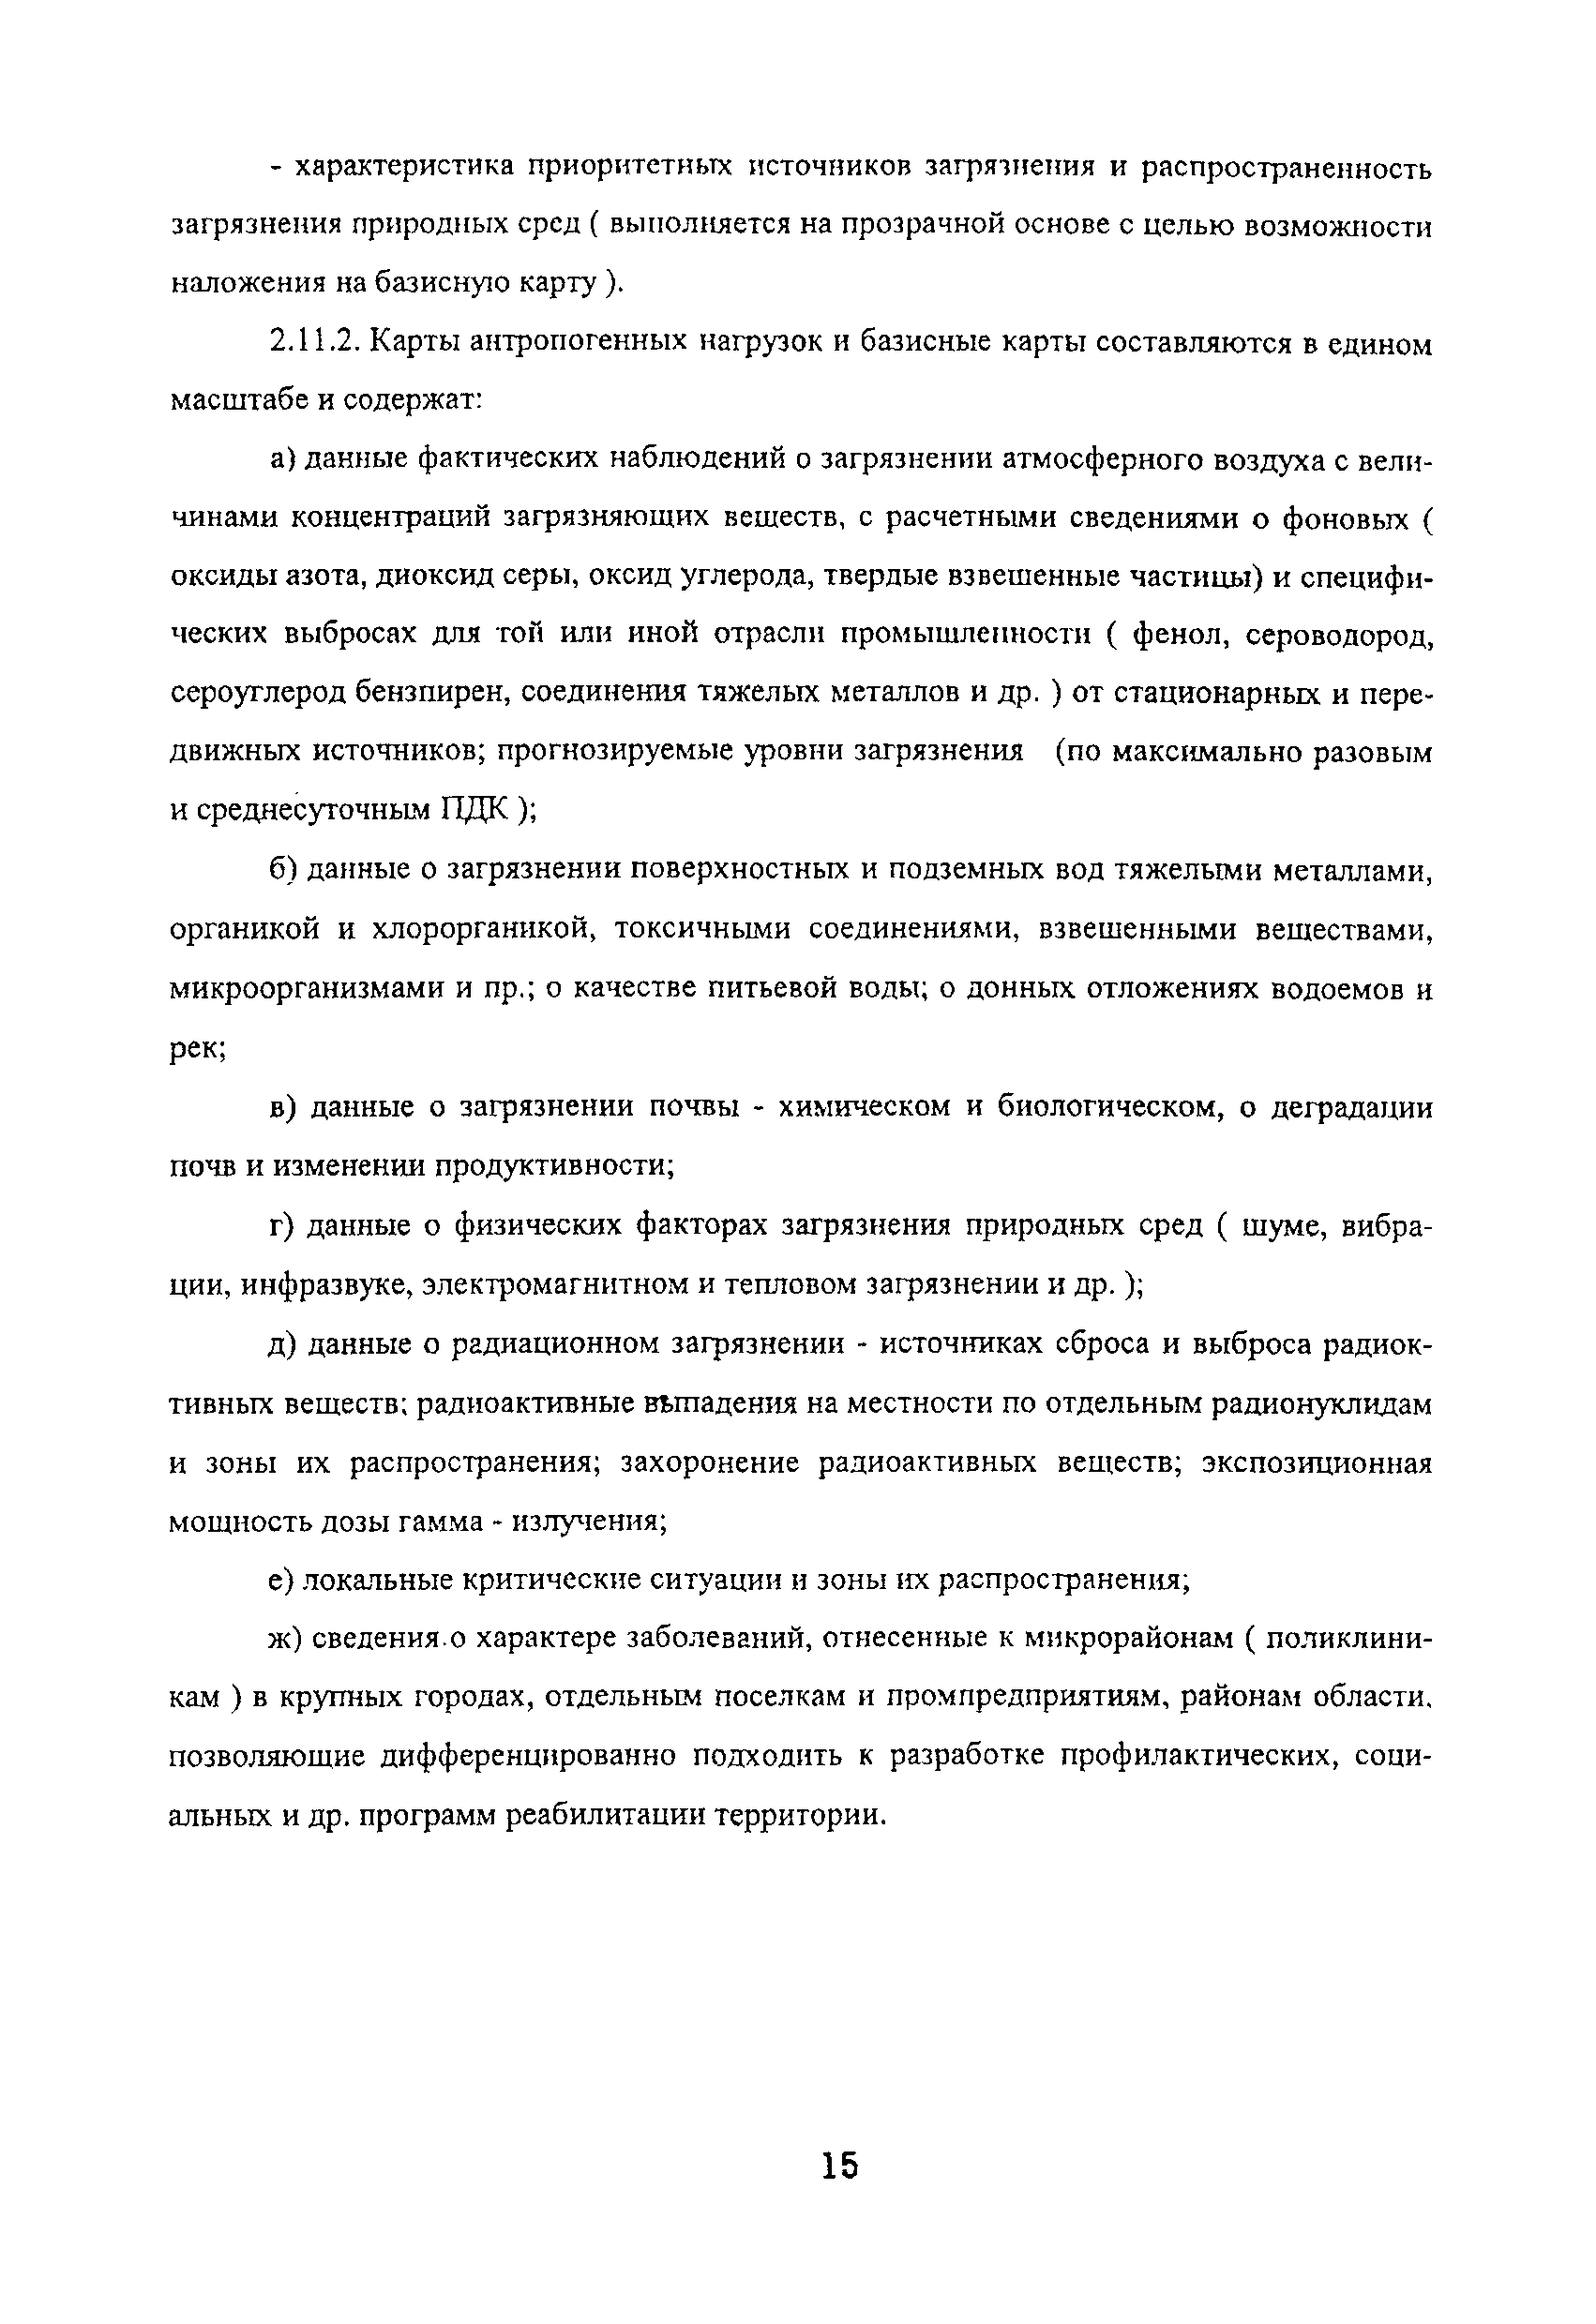 Методические рекомендации 01-19/12-17